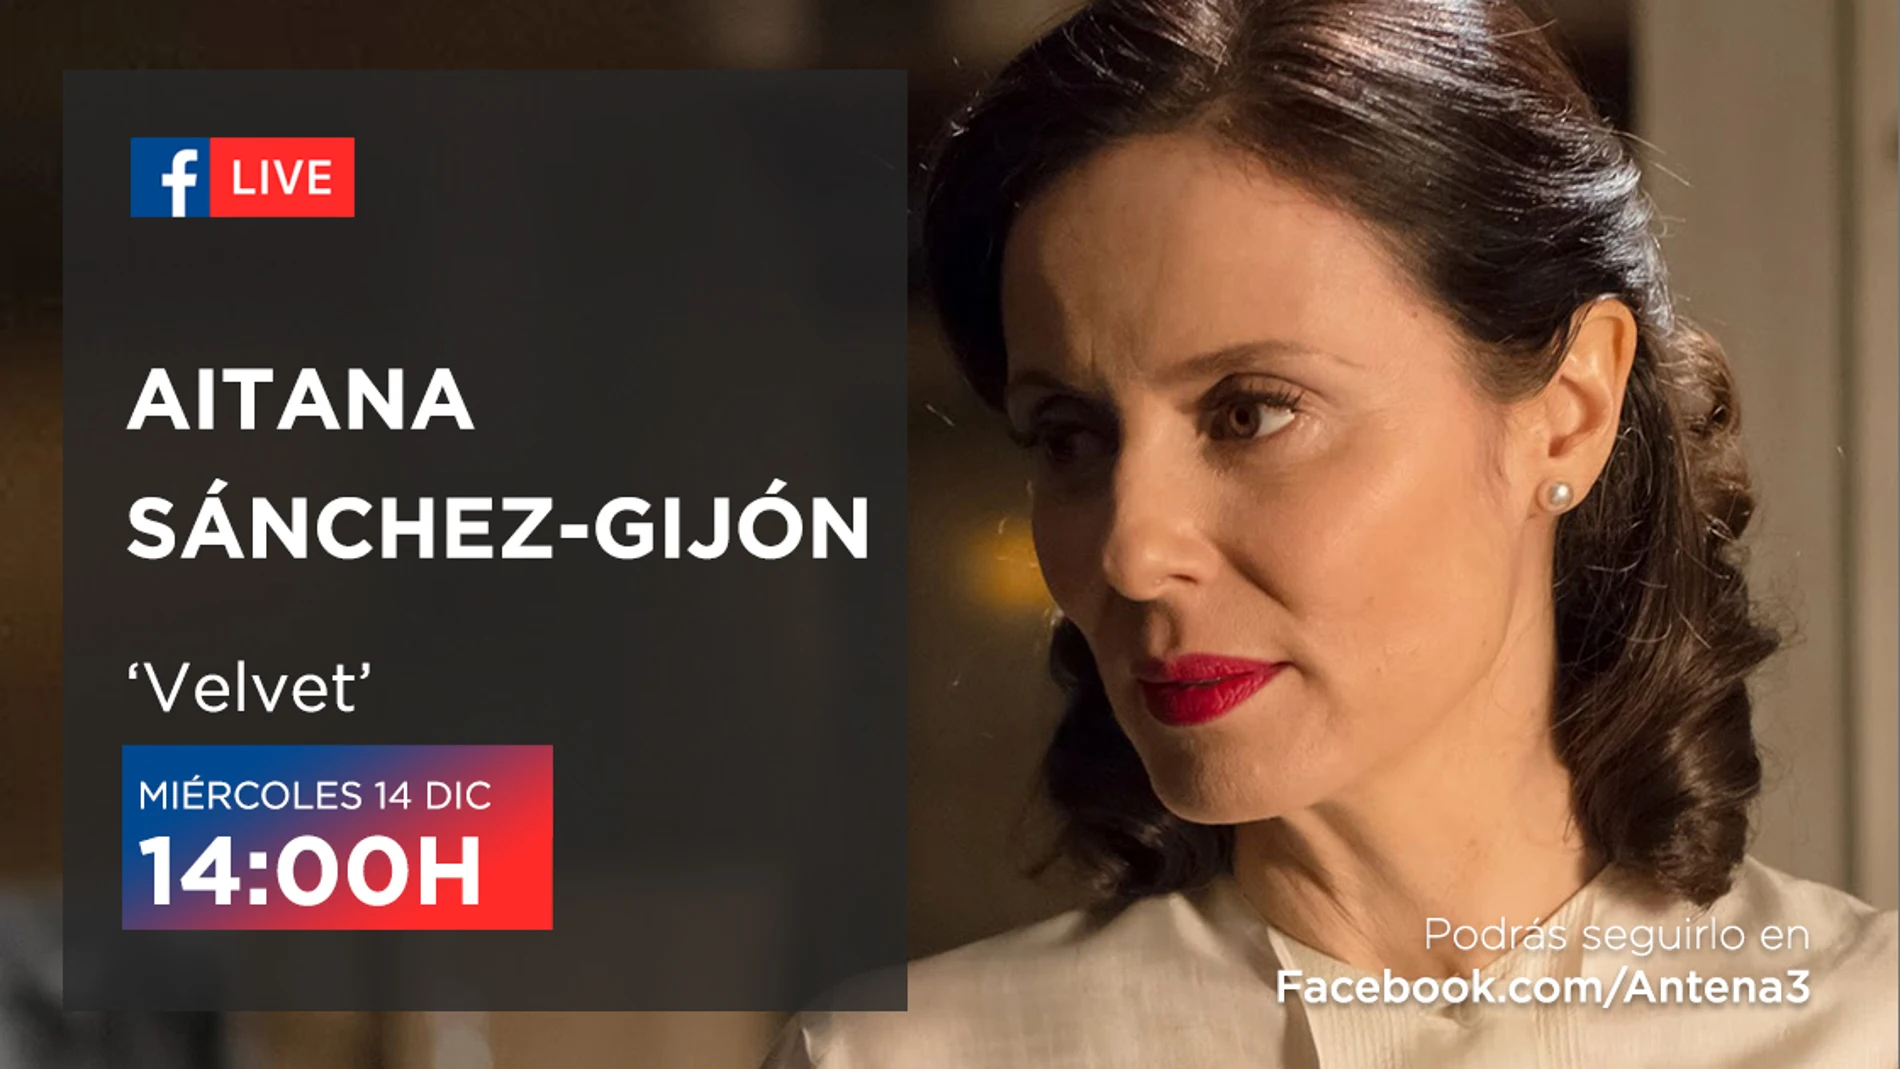 Aitana Sánchez-Gijón estará en directo en Facebook Live